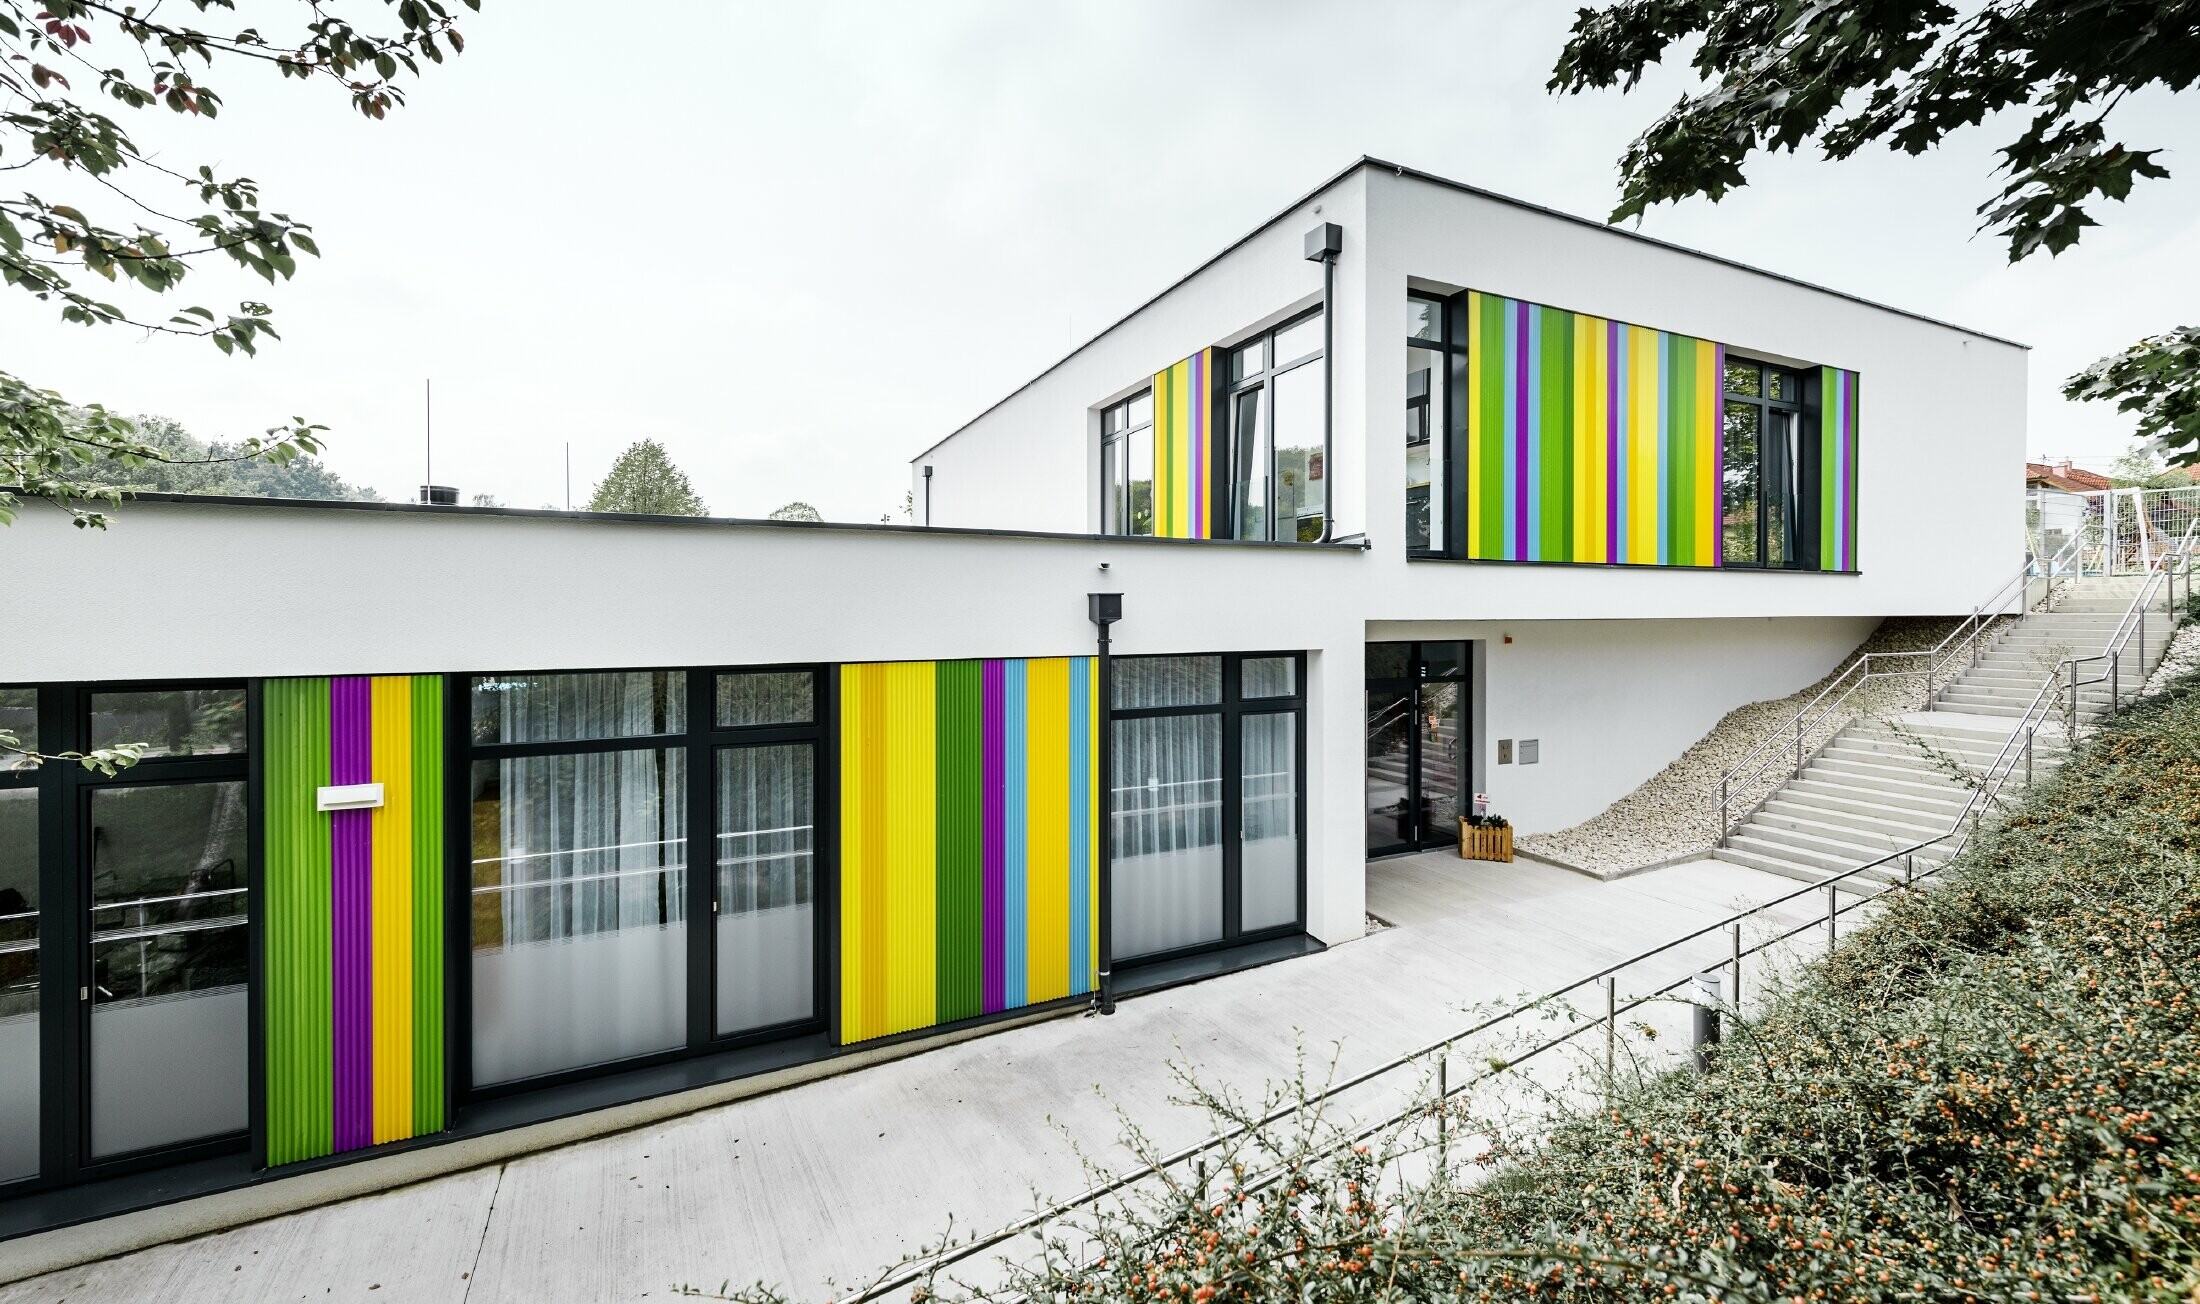 Barevné fasádní prvky v podobě lisovaného pilového profilu pro mateřskou školu v Hargelsbergu. Budova má plochou střechu a velká okna prakticky od podlahy až ke stropu.